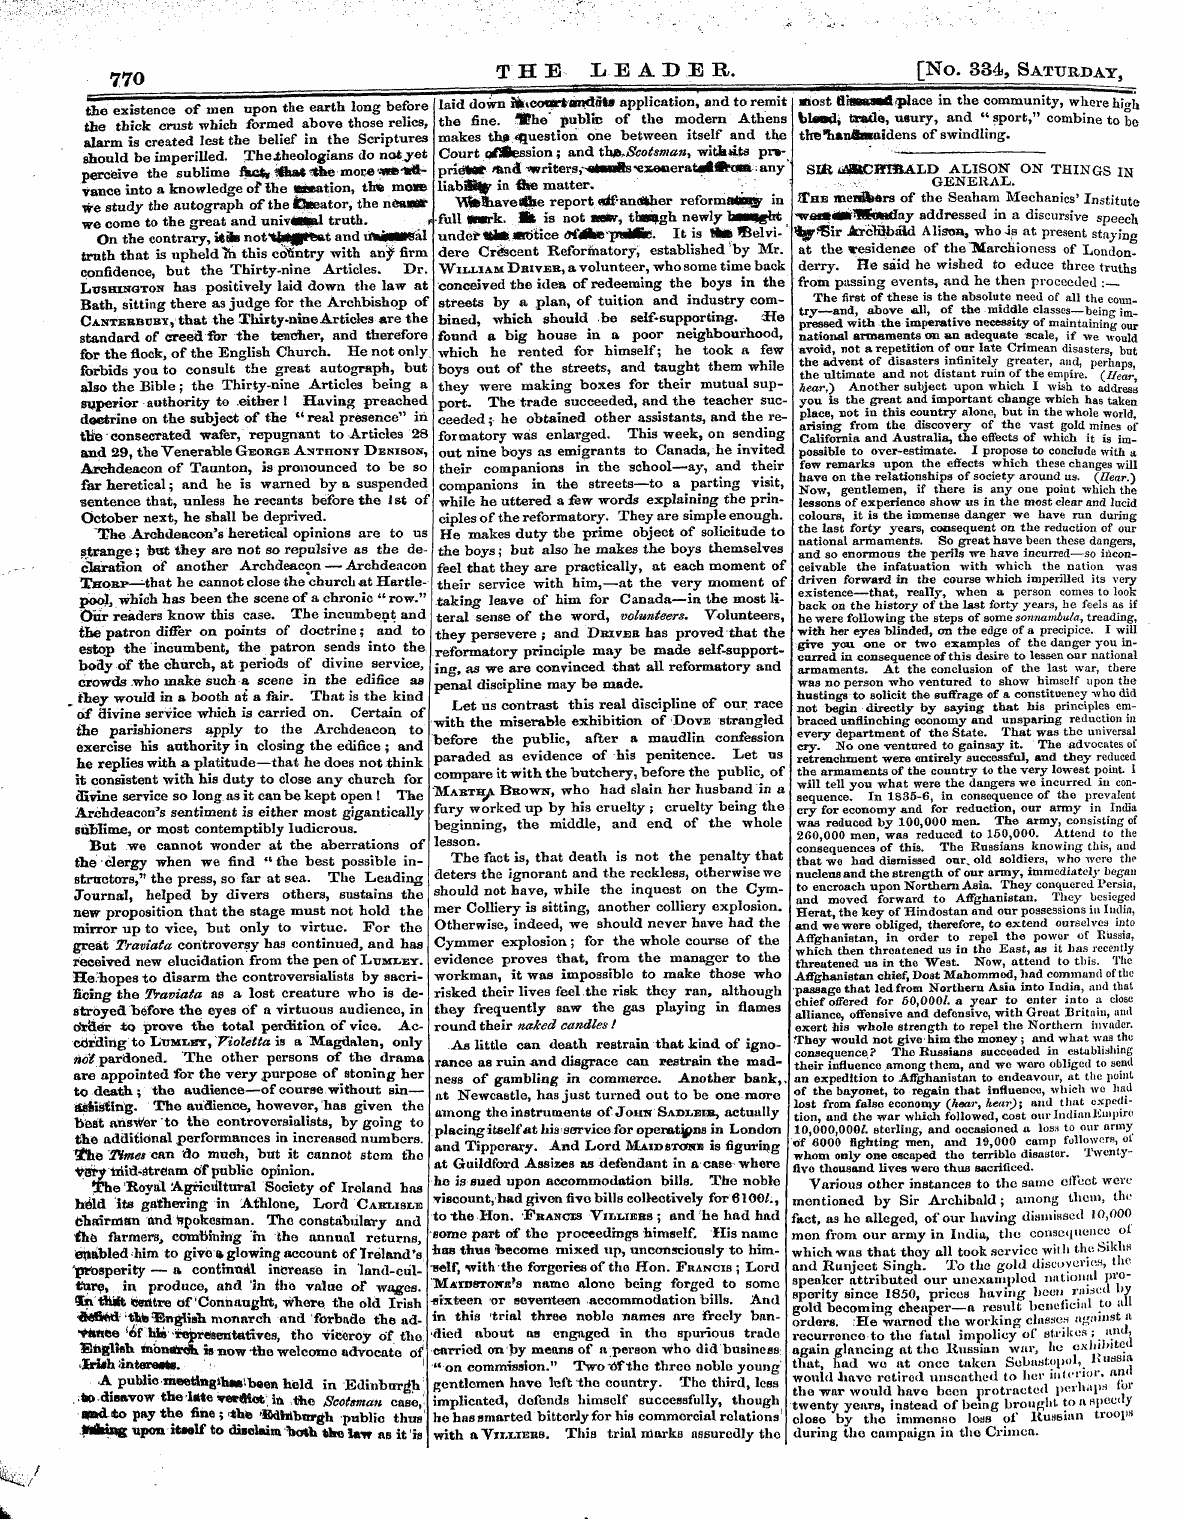 Leader (1850-1860): jS F Y, 2nd edition - 770 T H E ^Ead E R. [No. 334, Saturday,